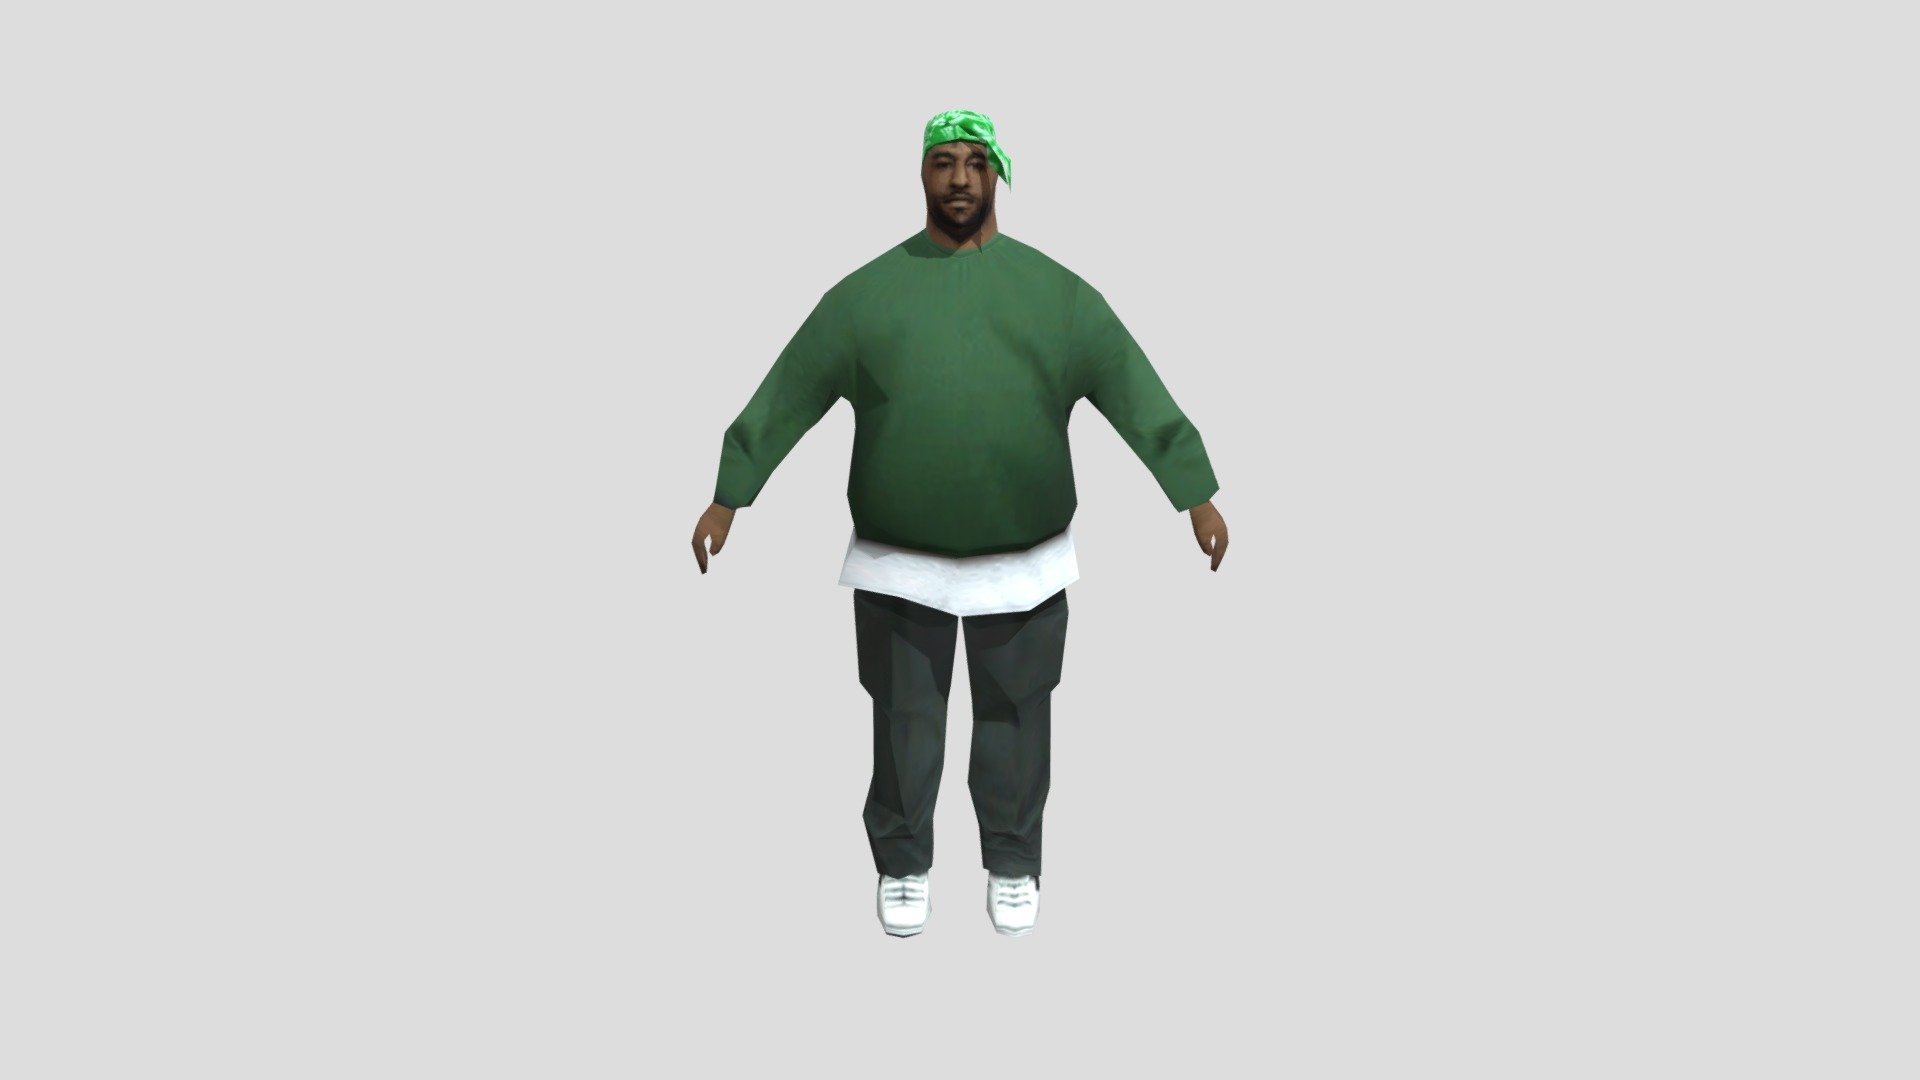 Grand Theft Auto San Andreas Grove Gang Member model 3d model